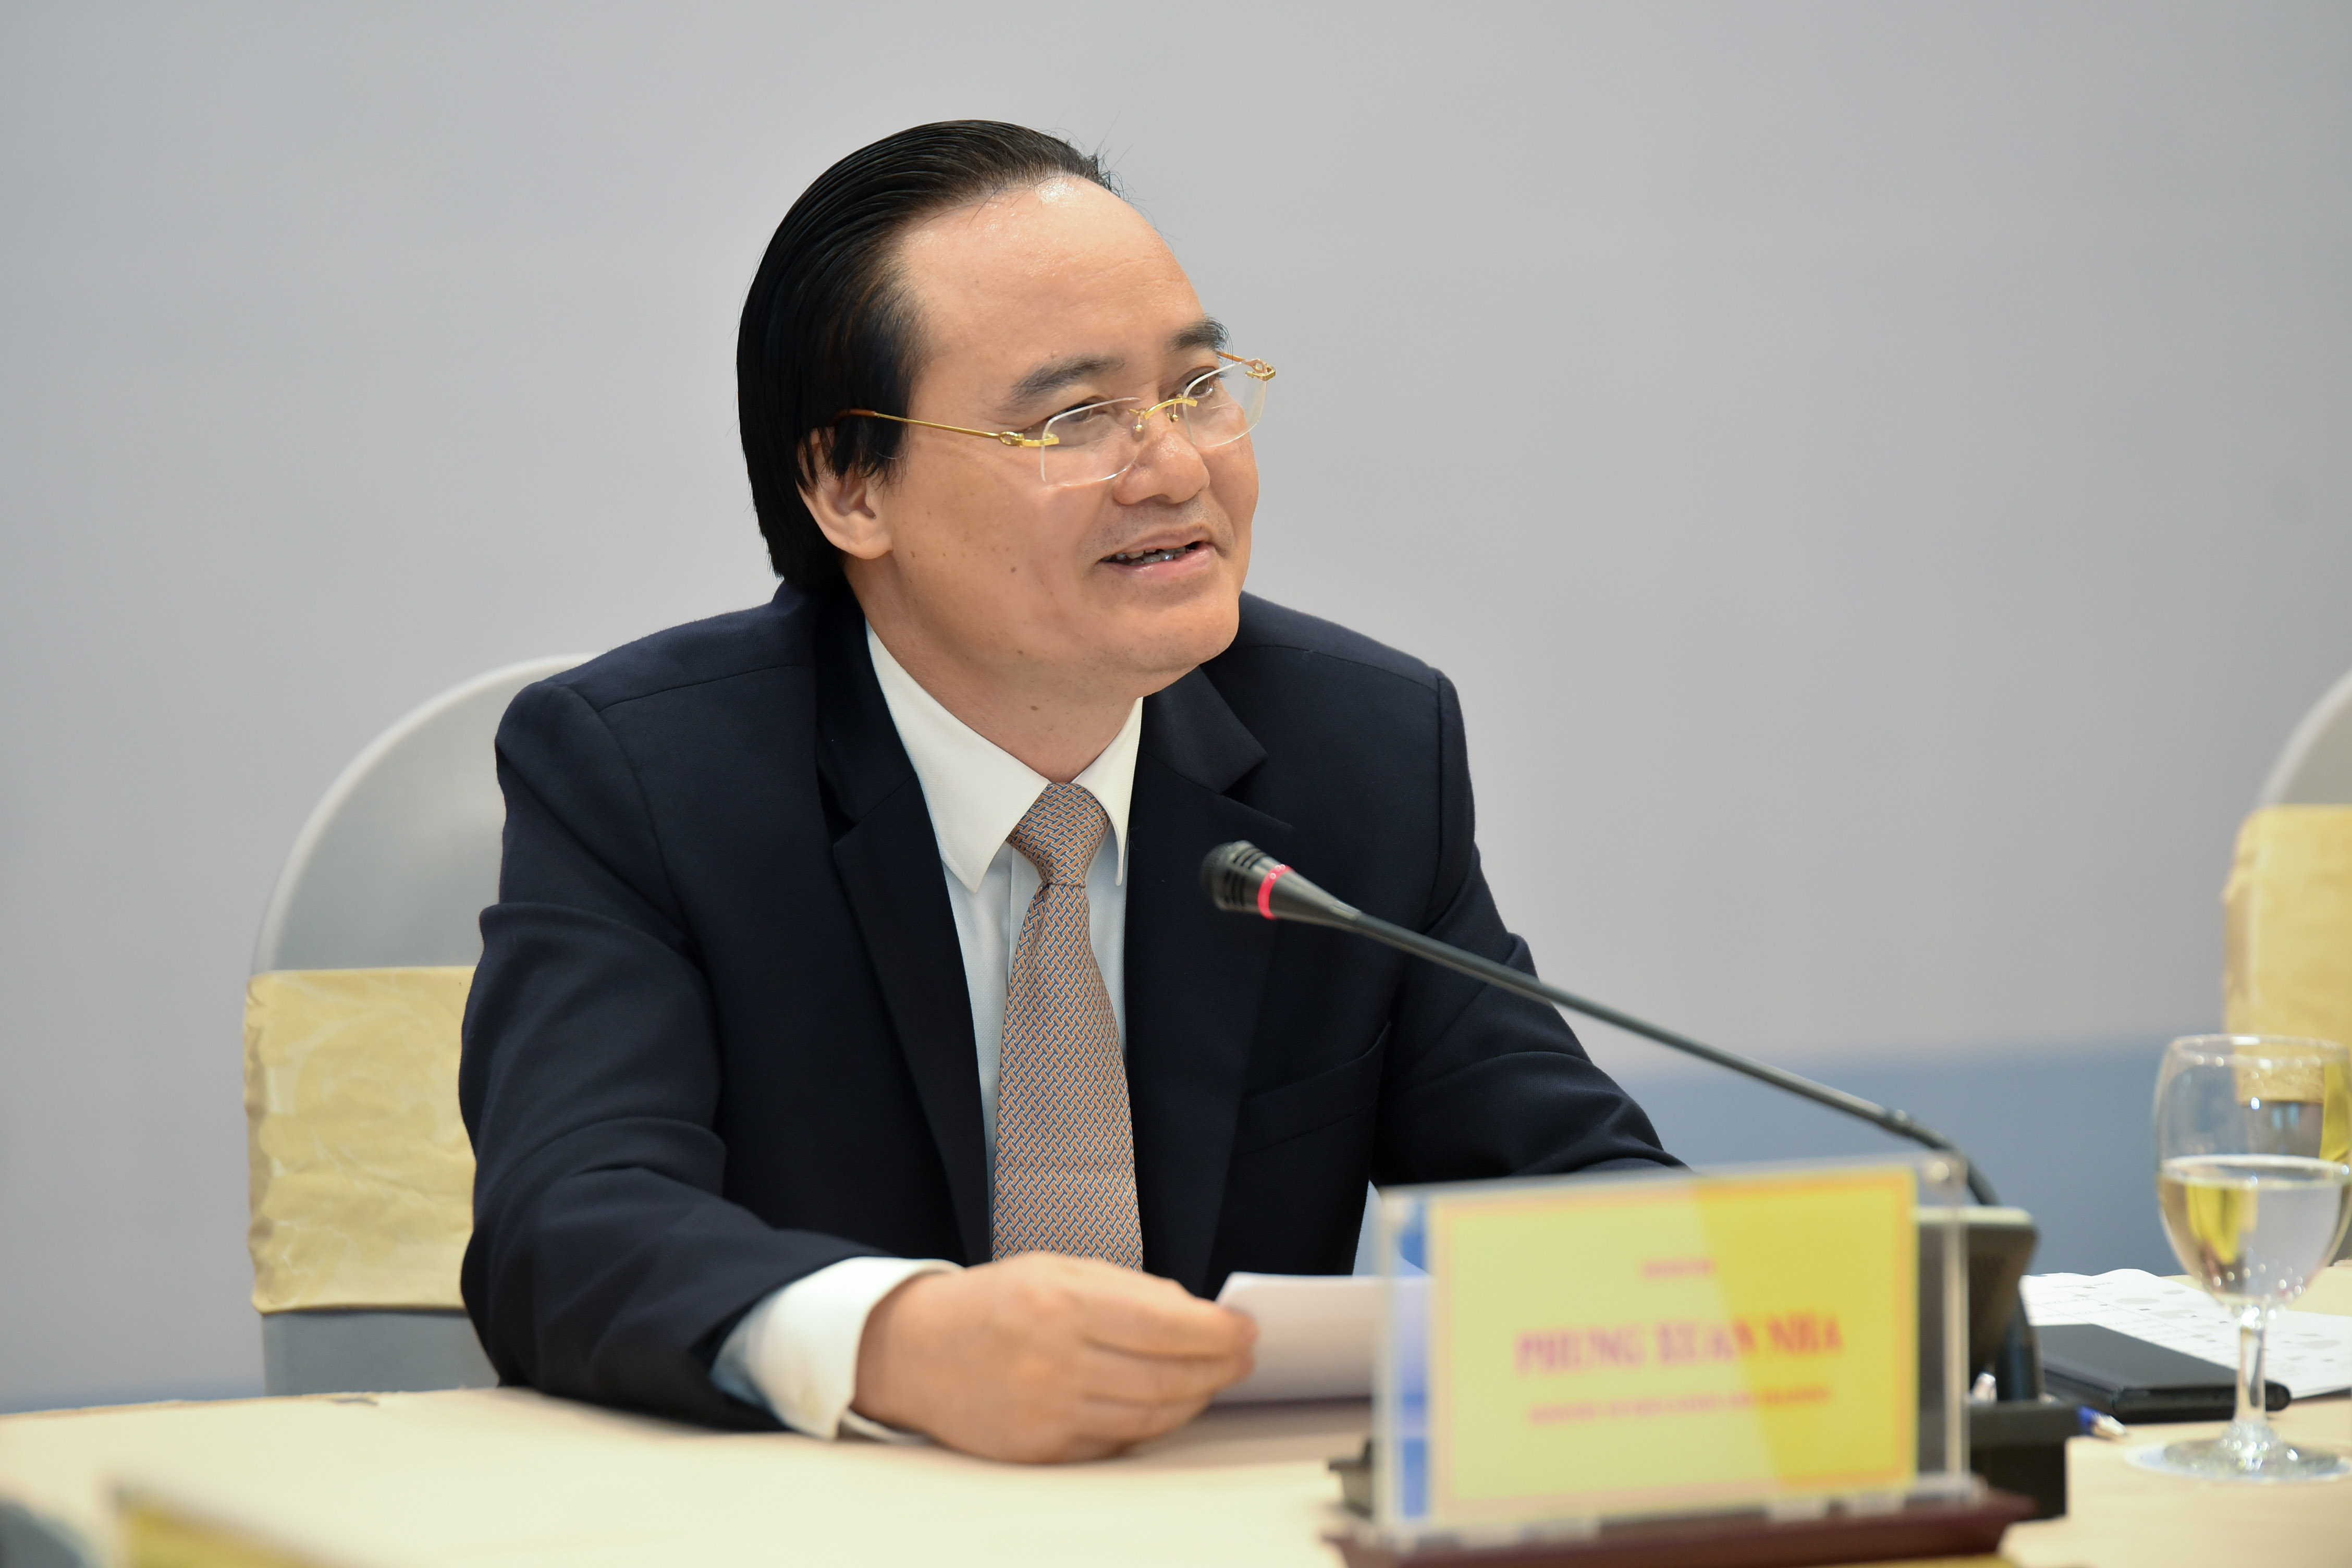 Bộ trưởng Bộ Giáo dục và Đào tạo Phùng Xuân Nhạ phát biểu tại buổi tọa đàm tại Hà Nội.